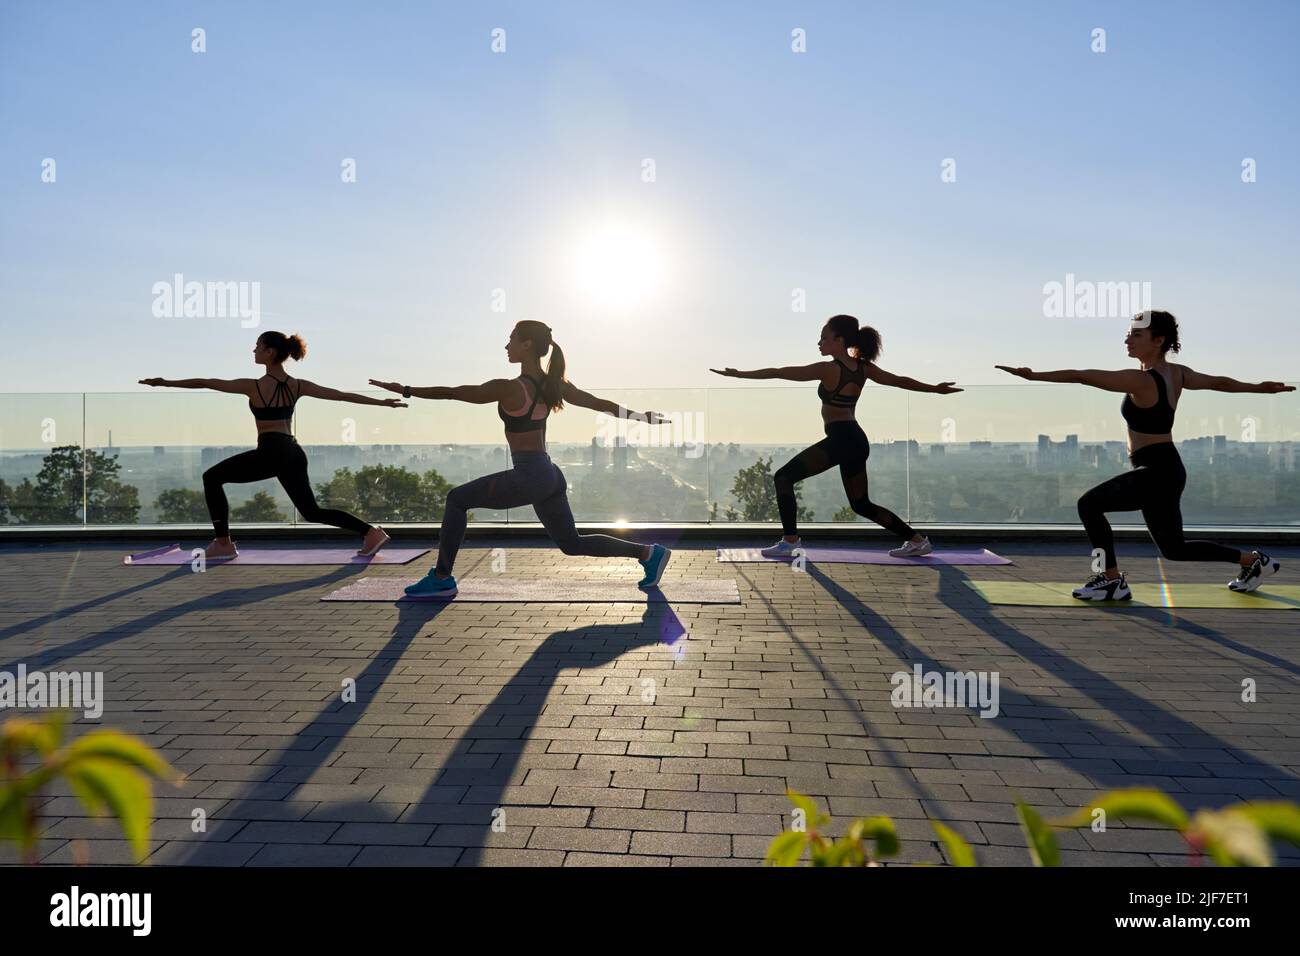 Les silhouettes femelles se posent en guerrier de yoga lors d'un cours de groupe à l'extérieur au lever du soleil. Banque D'Images